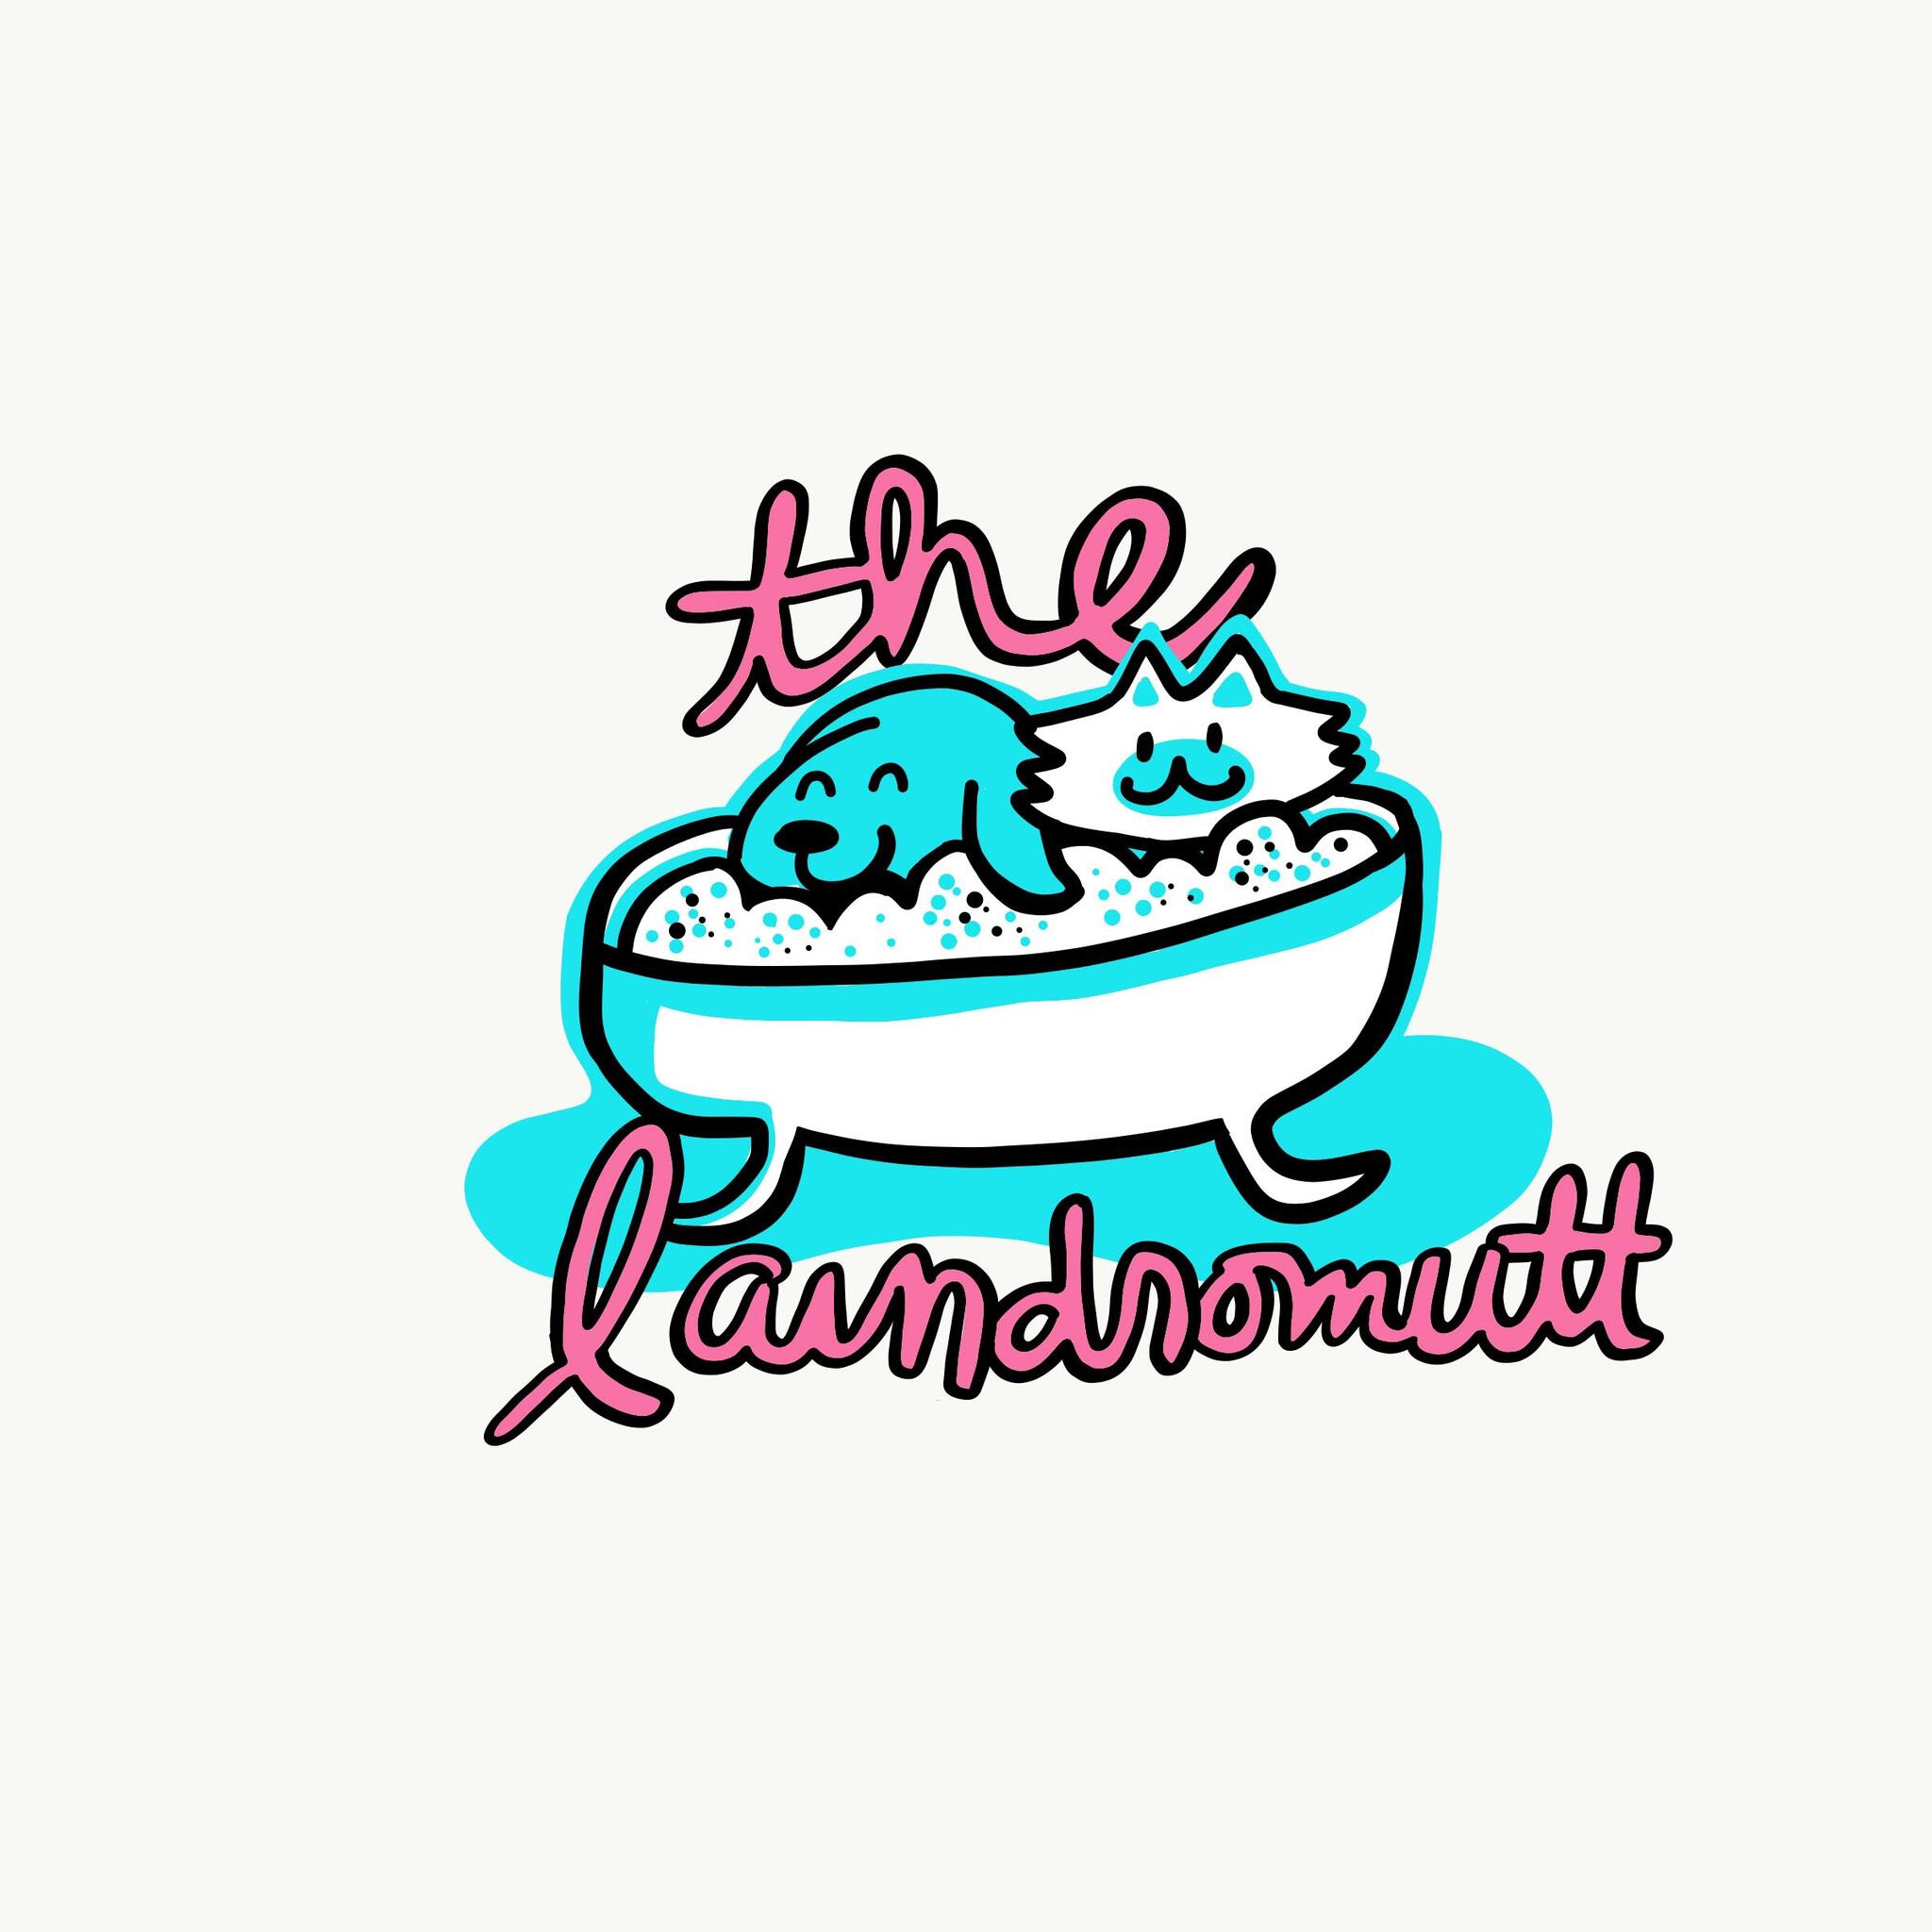 The Laundromutt, LLC